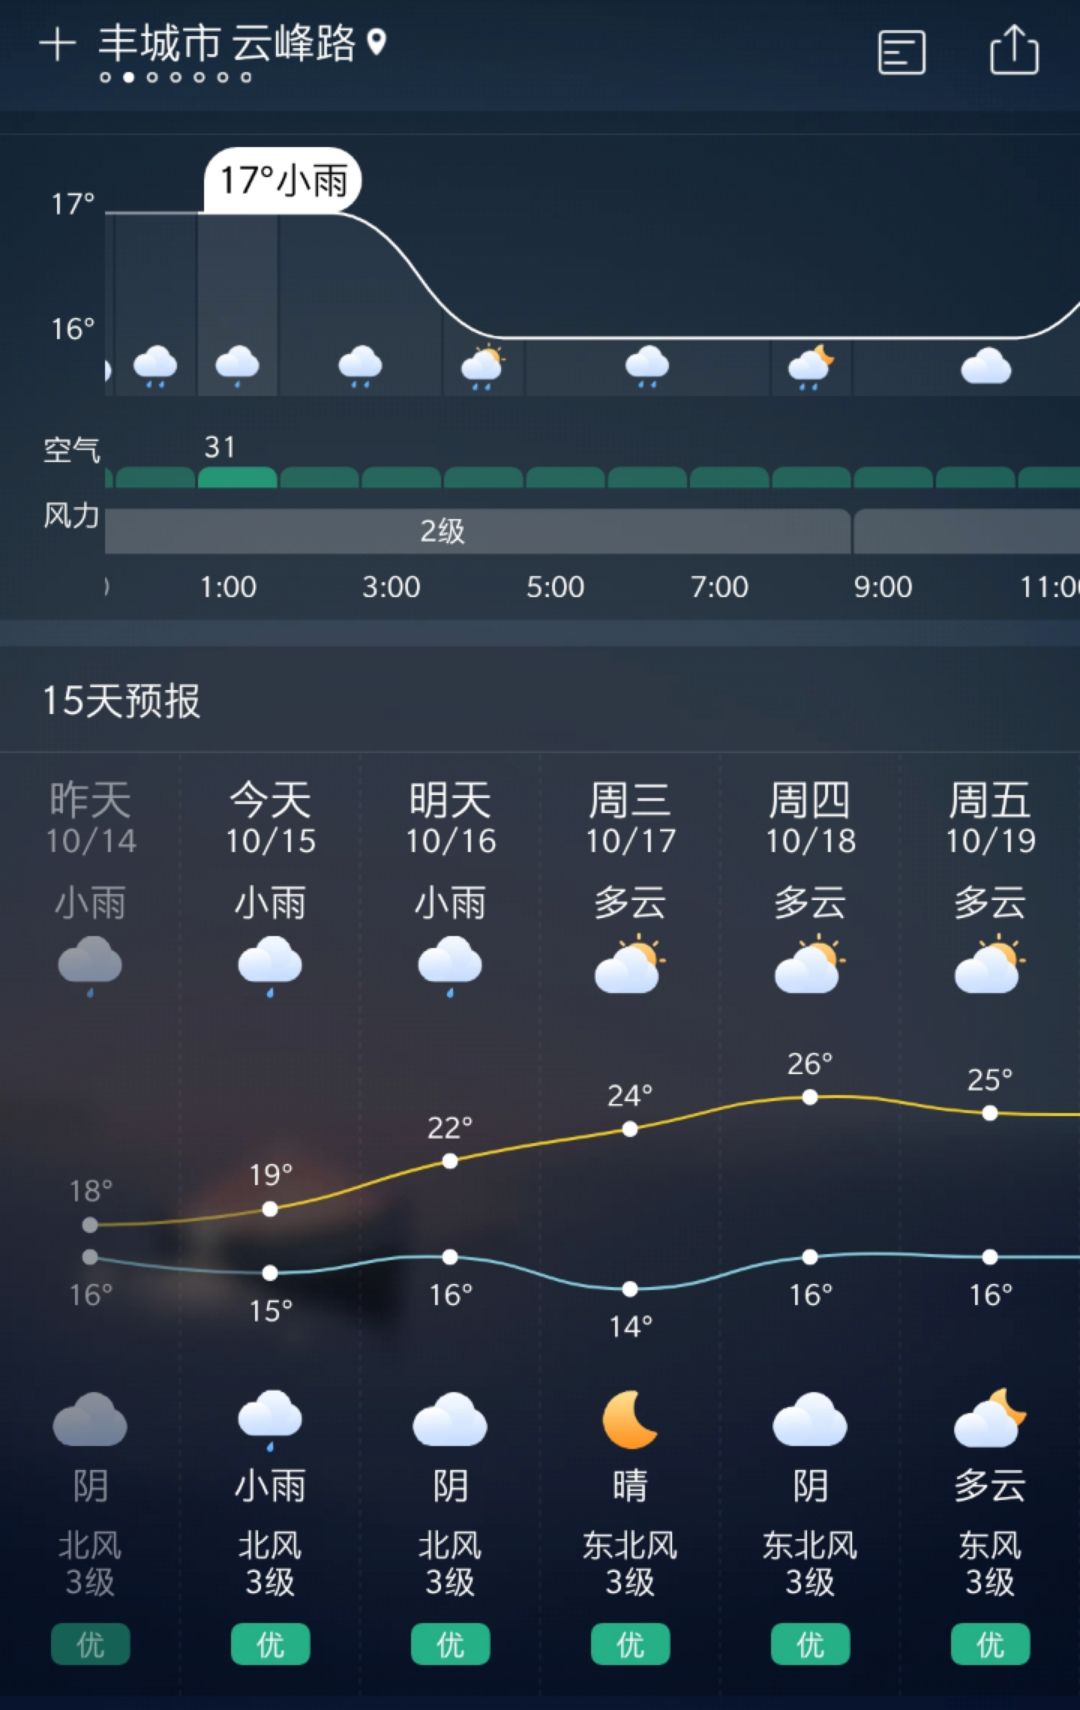 丰城未来天天气预报,一场秋雨一阵凉!